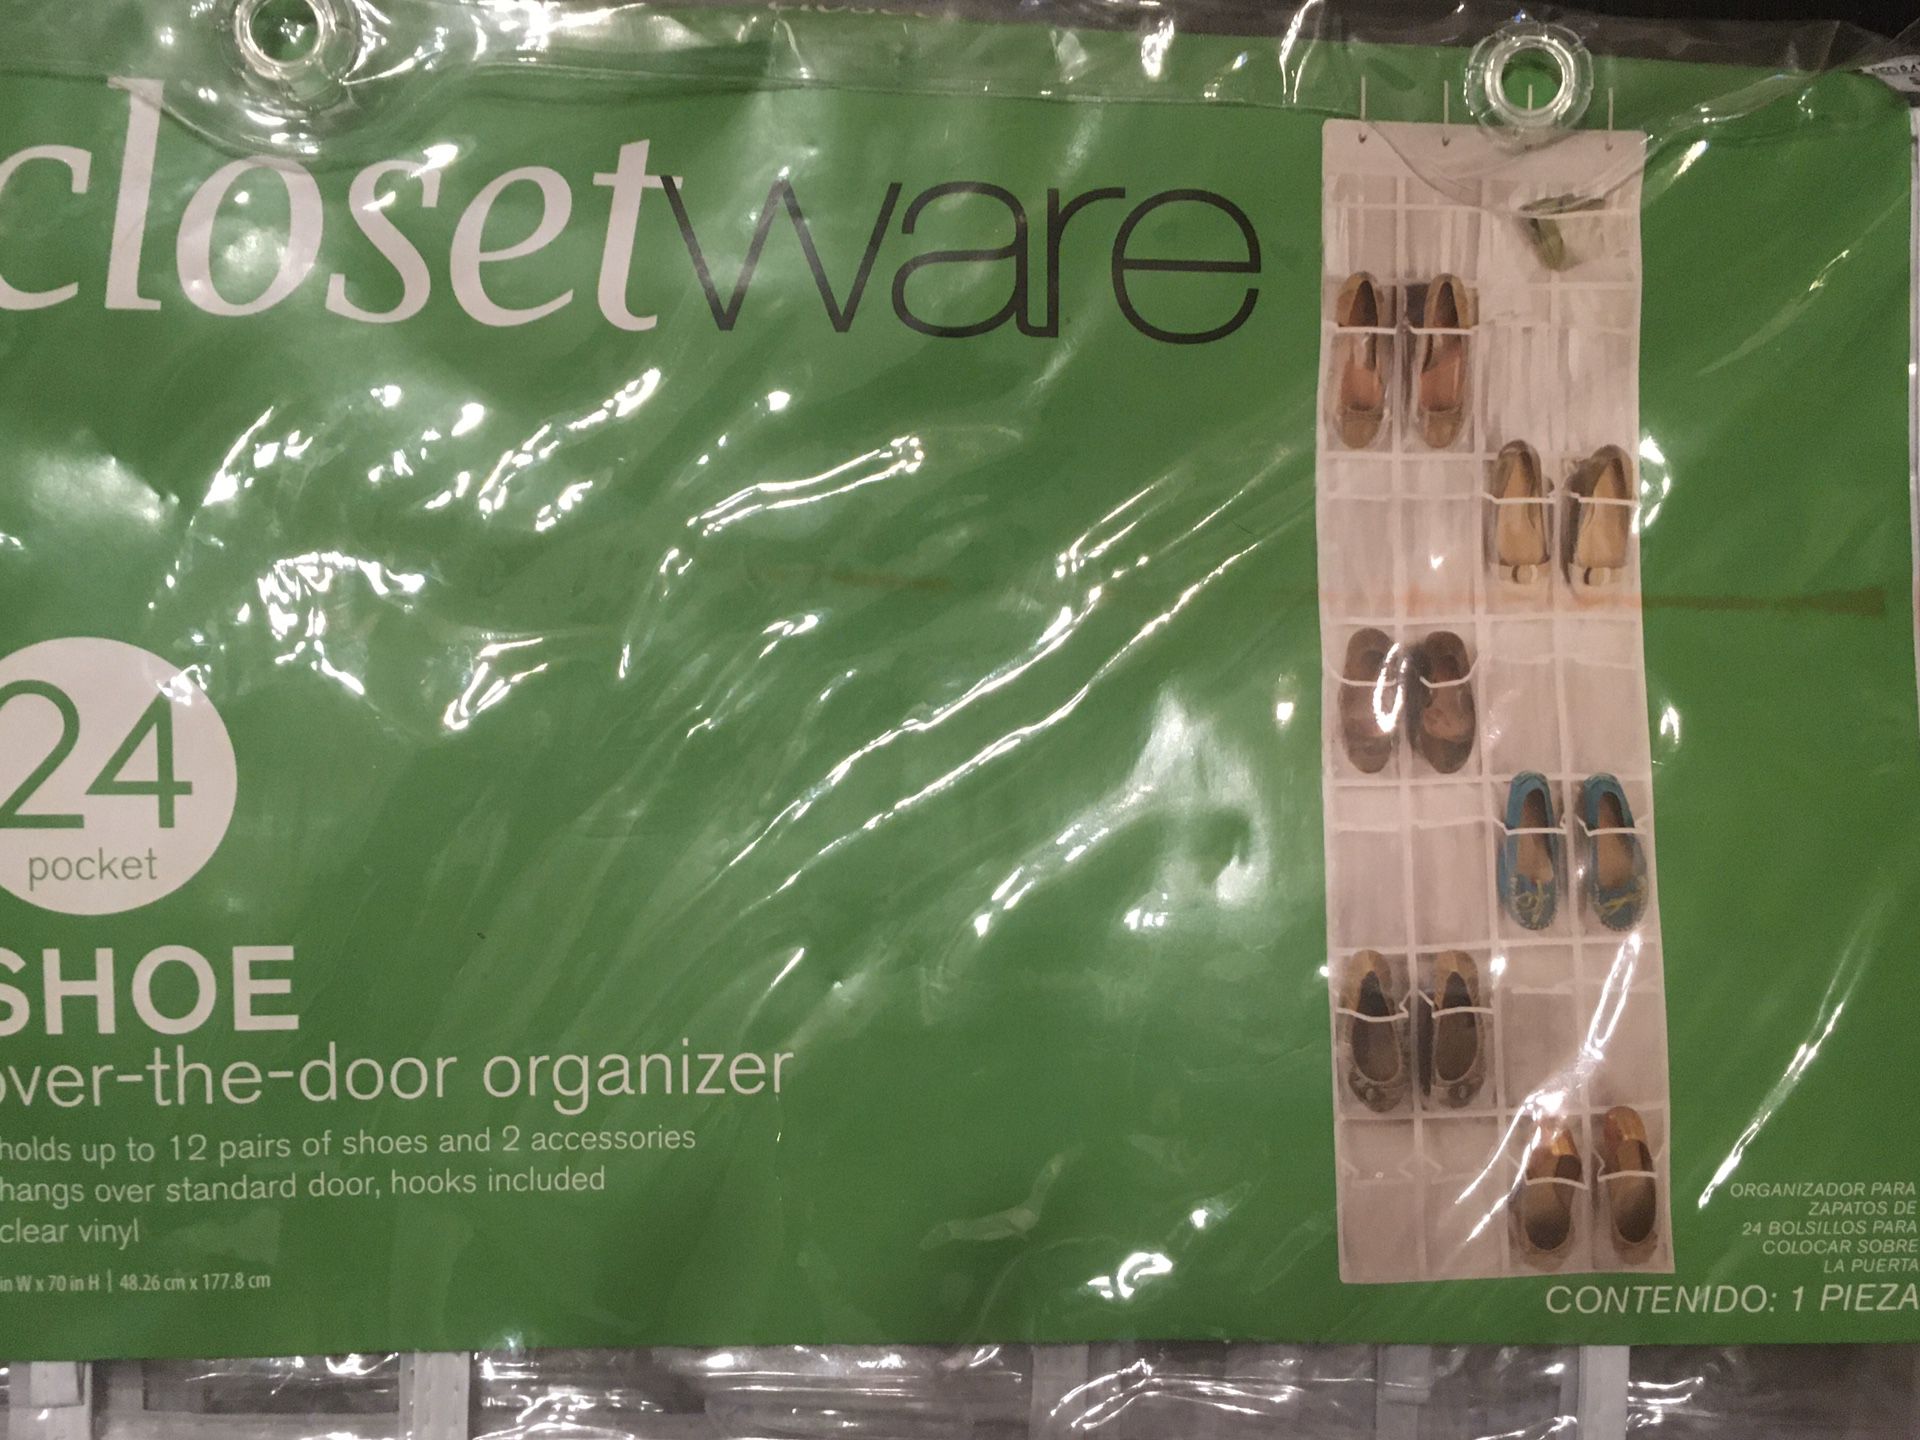 Closet ware Shoe Over-the-Door Organizer